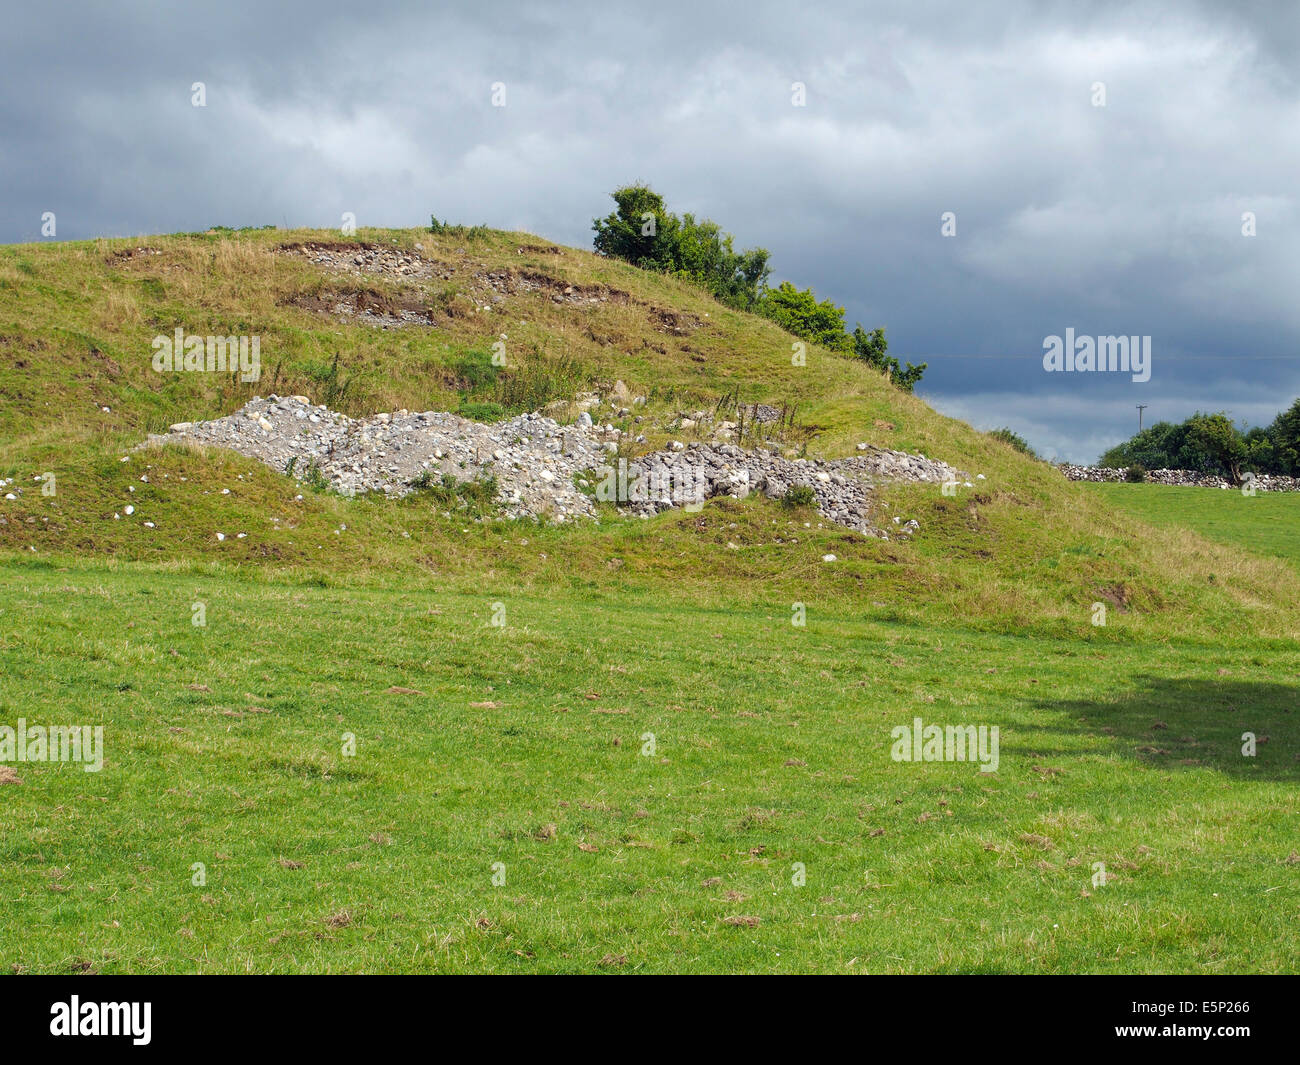 Un drumlin, una colina alargada en la forma de un huevo es un invertido landform glacial. Este ejemplo cerca de Dunmore, Galway, Irlanda. Foto de stock